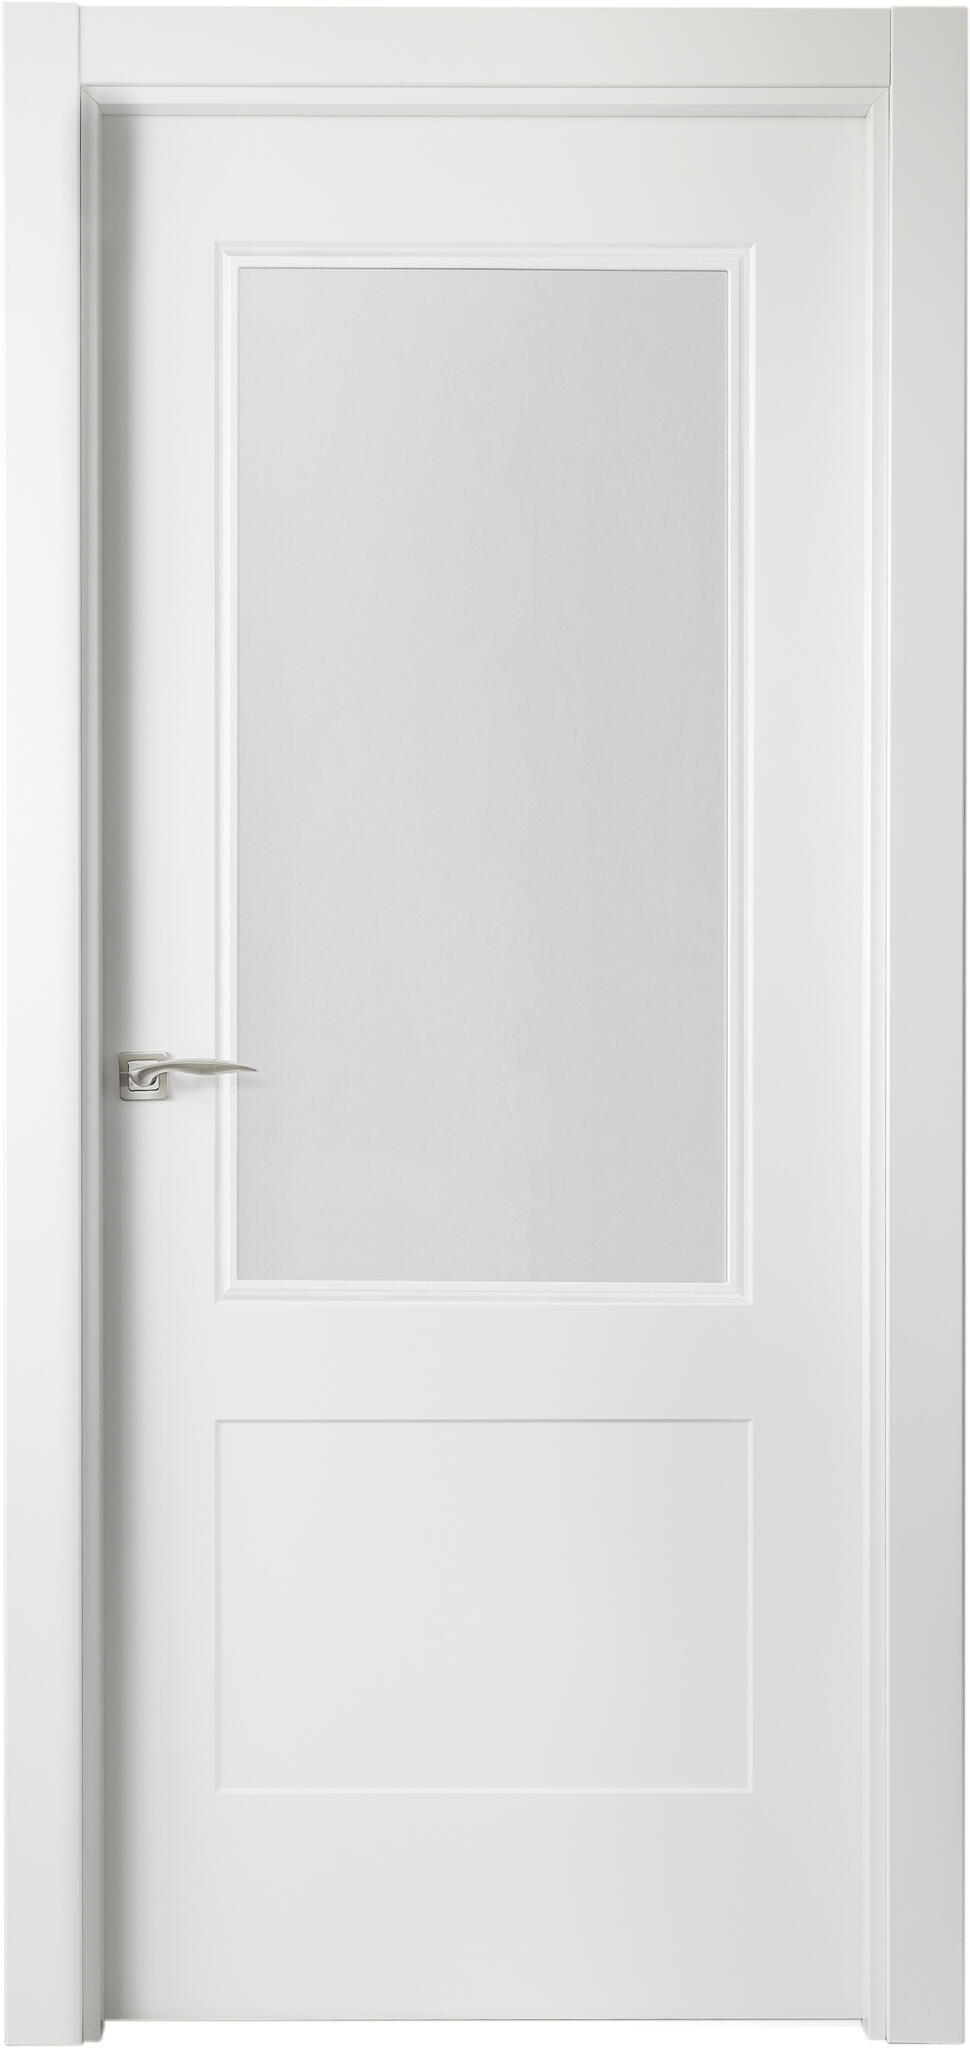 Puerta atlanta plus blanco apertura derecha con cristal 11x92,5cm